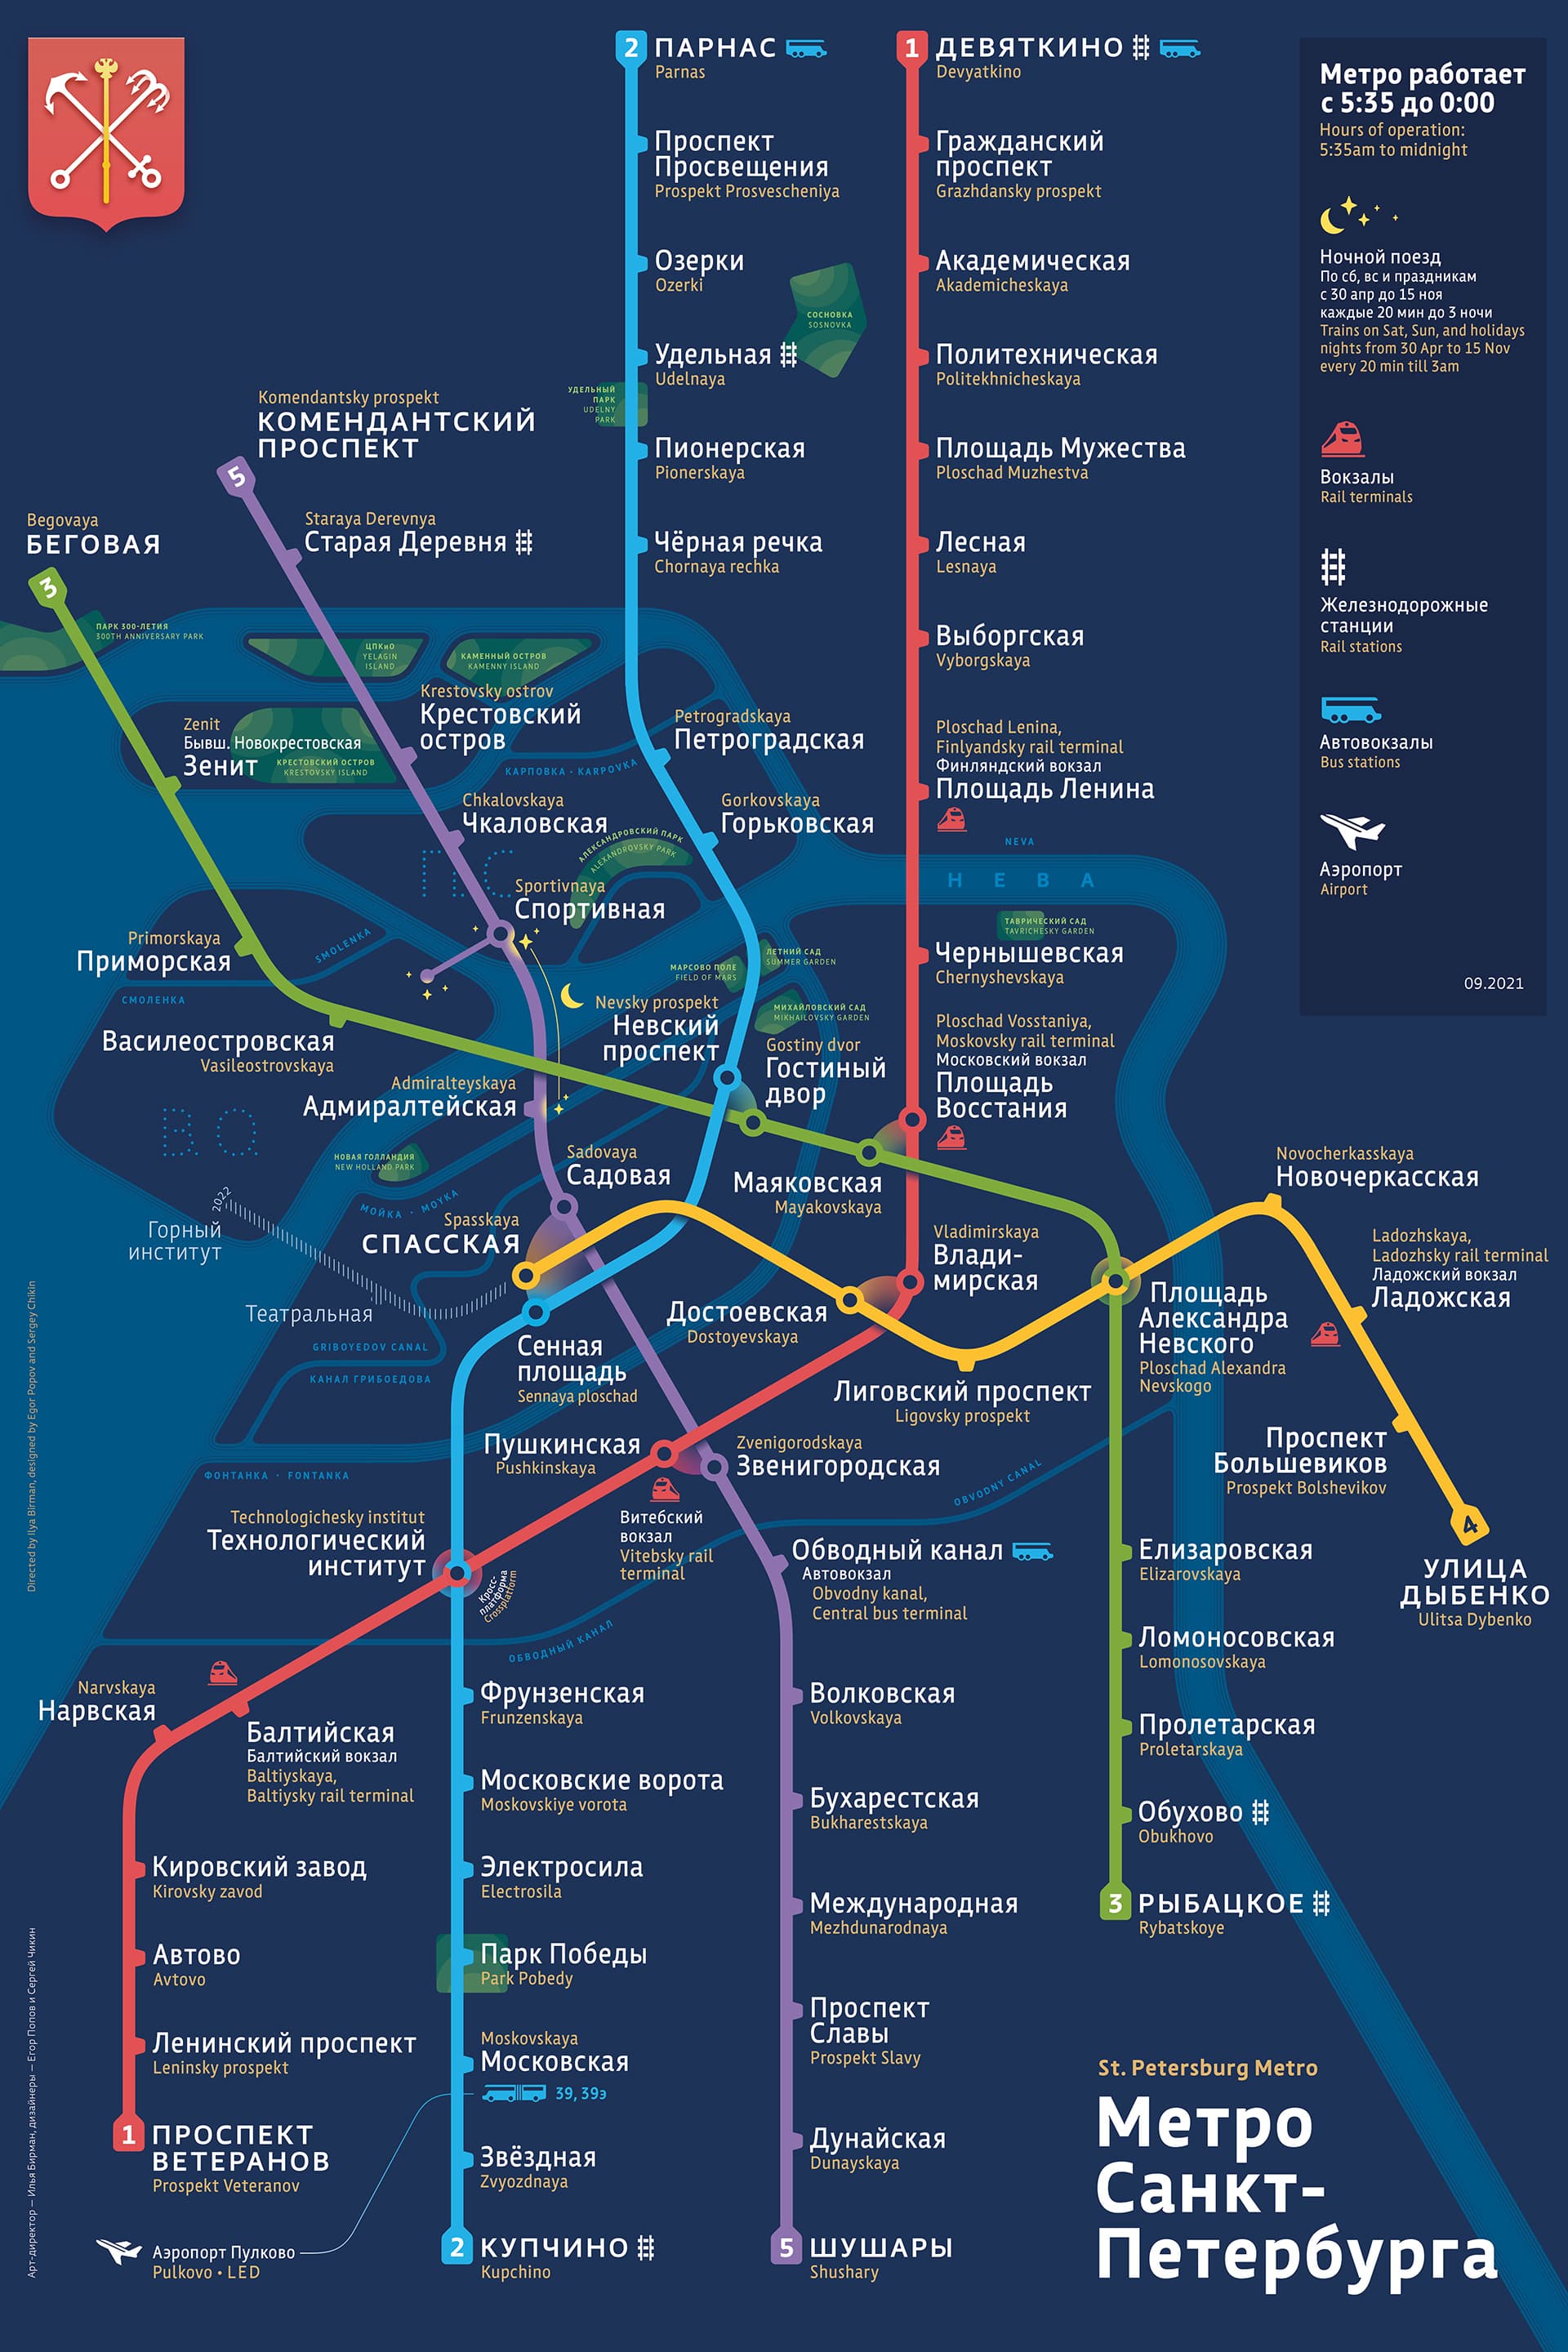 Навигация спб 2024 когда начинается. Метрополитен Питера схема 2021. Карта метро Санкт-Петербурга 2021. Станции метро Санкт-Петербурга схема 2021. Схема метрополитена СПБ 2021.